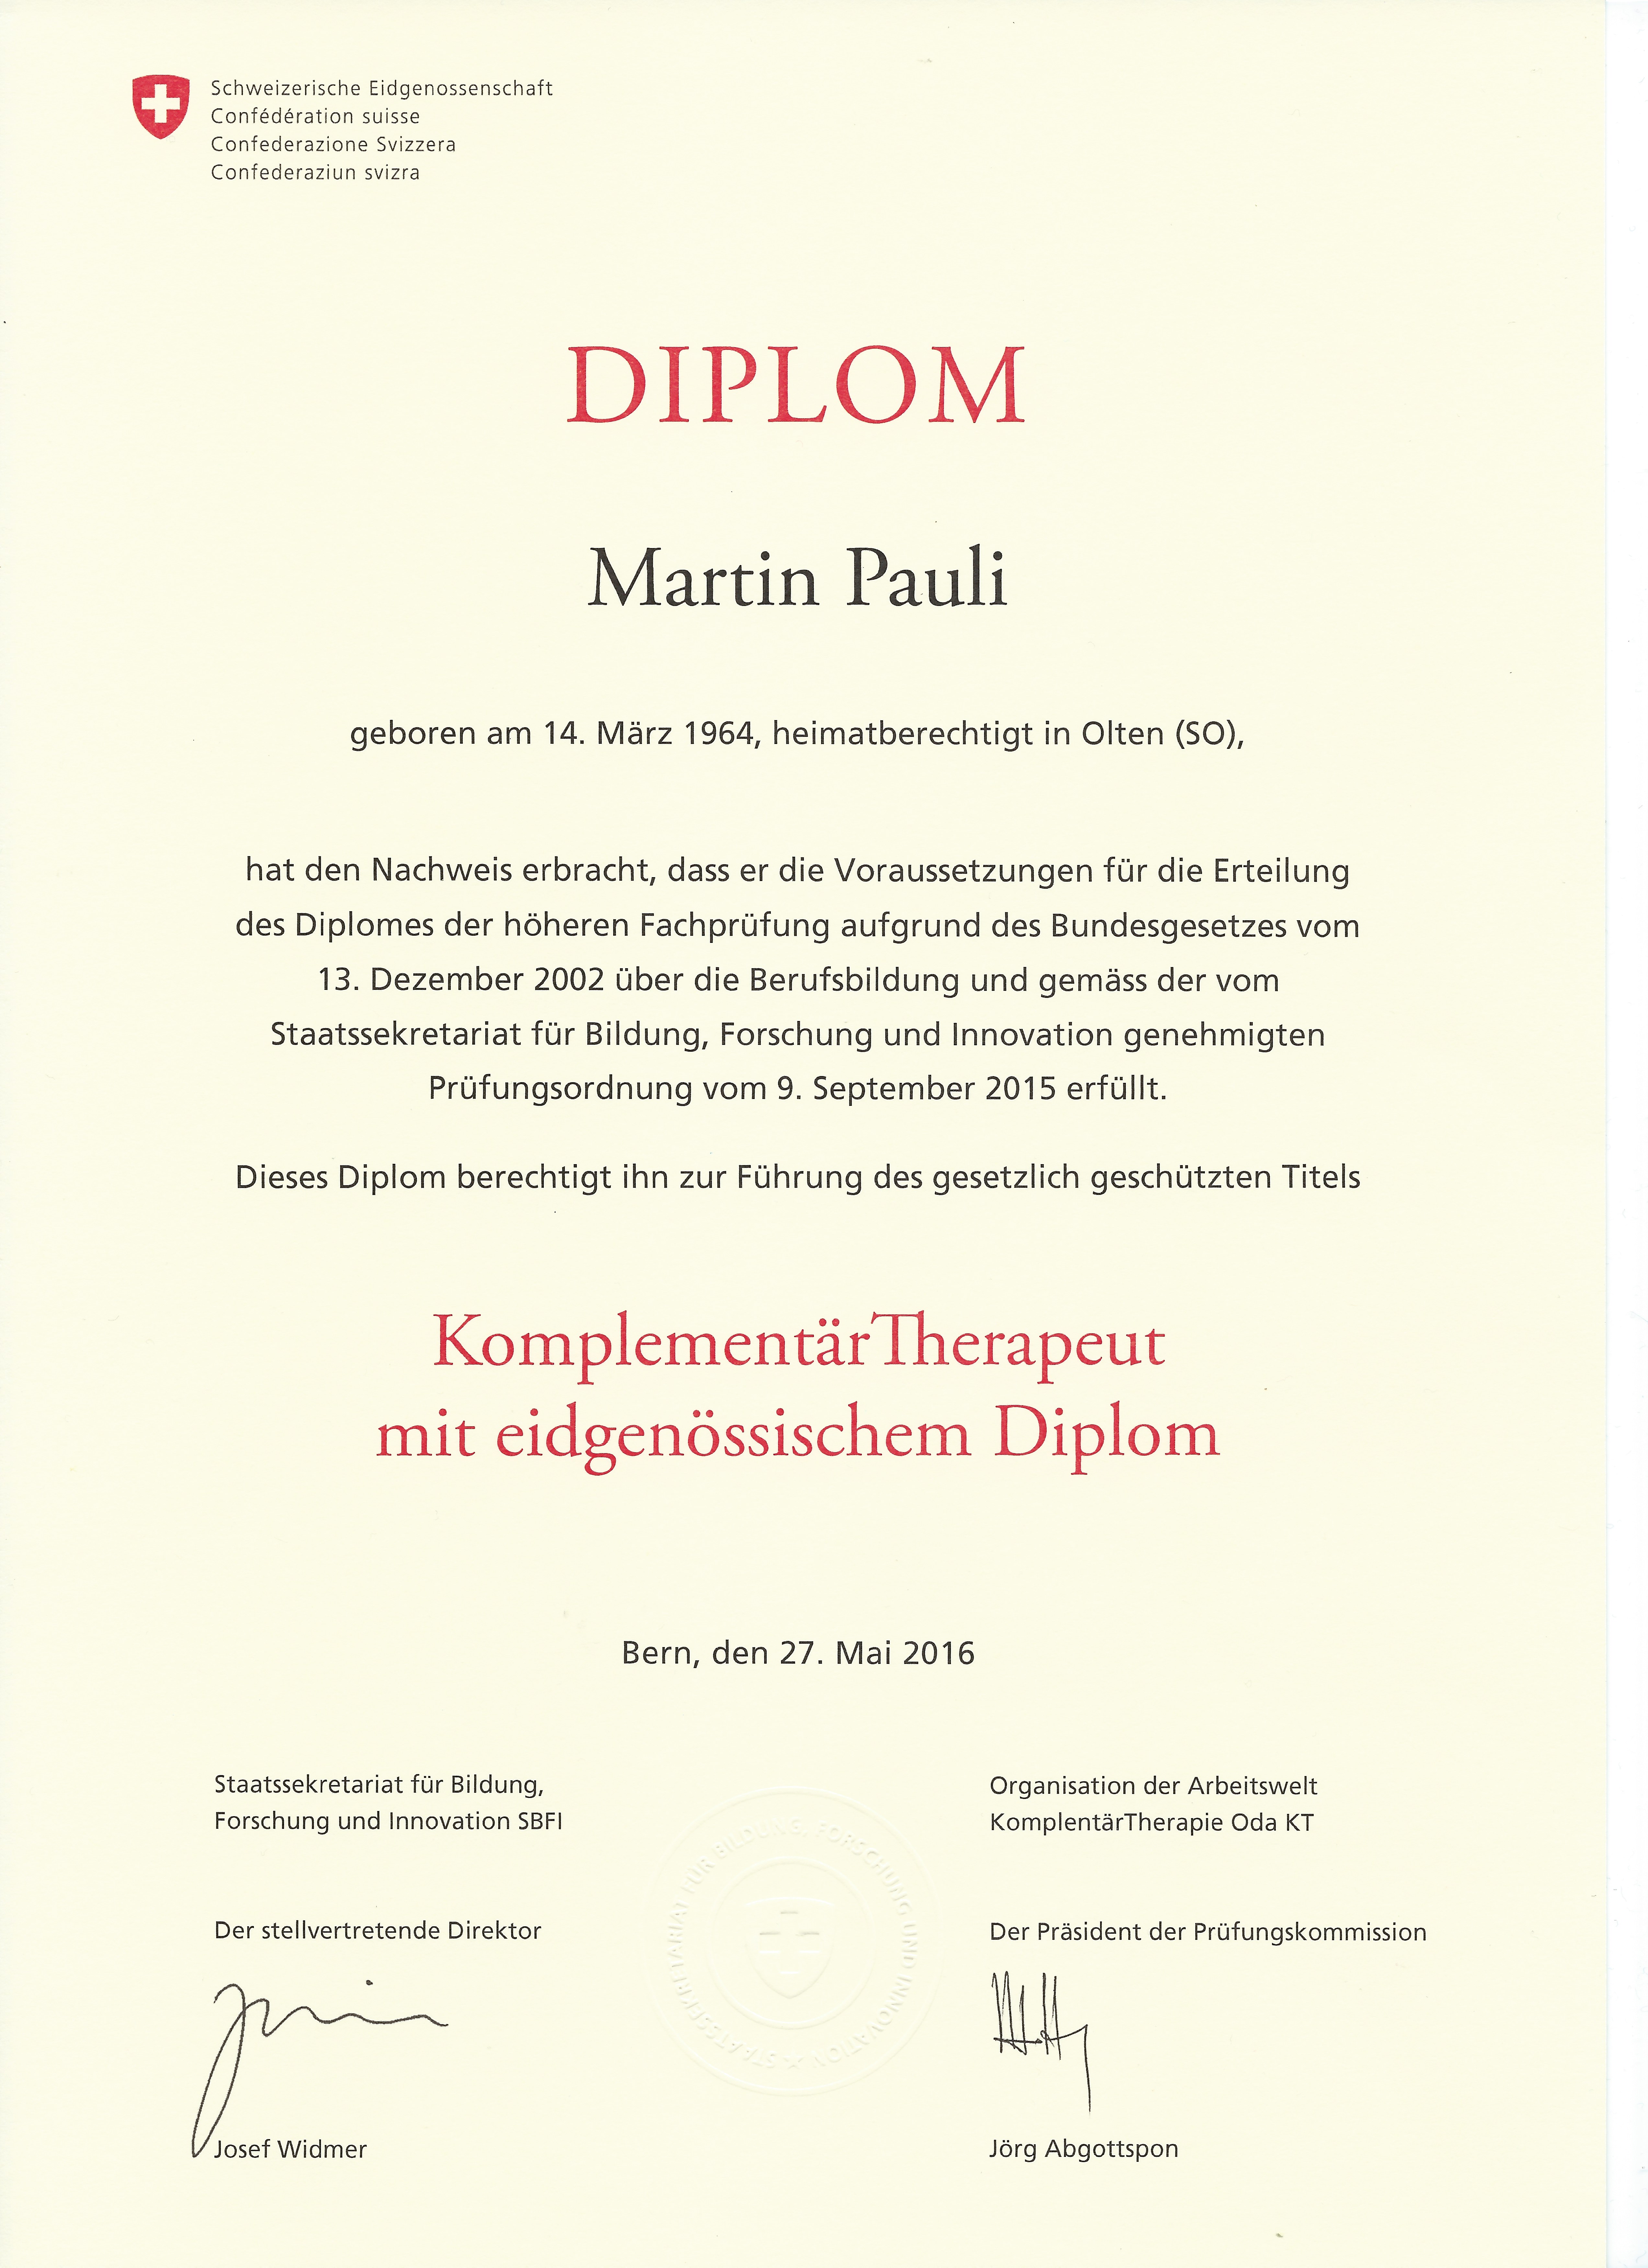 Eidgenössisches Diplom